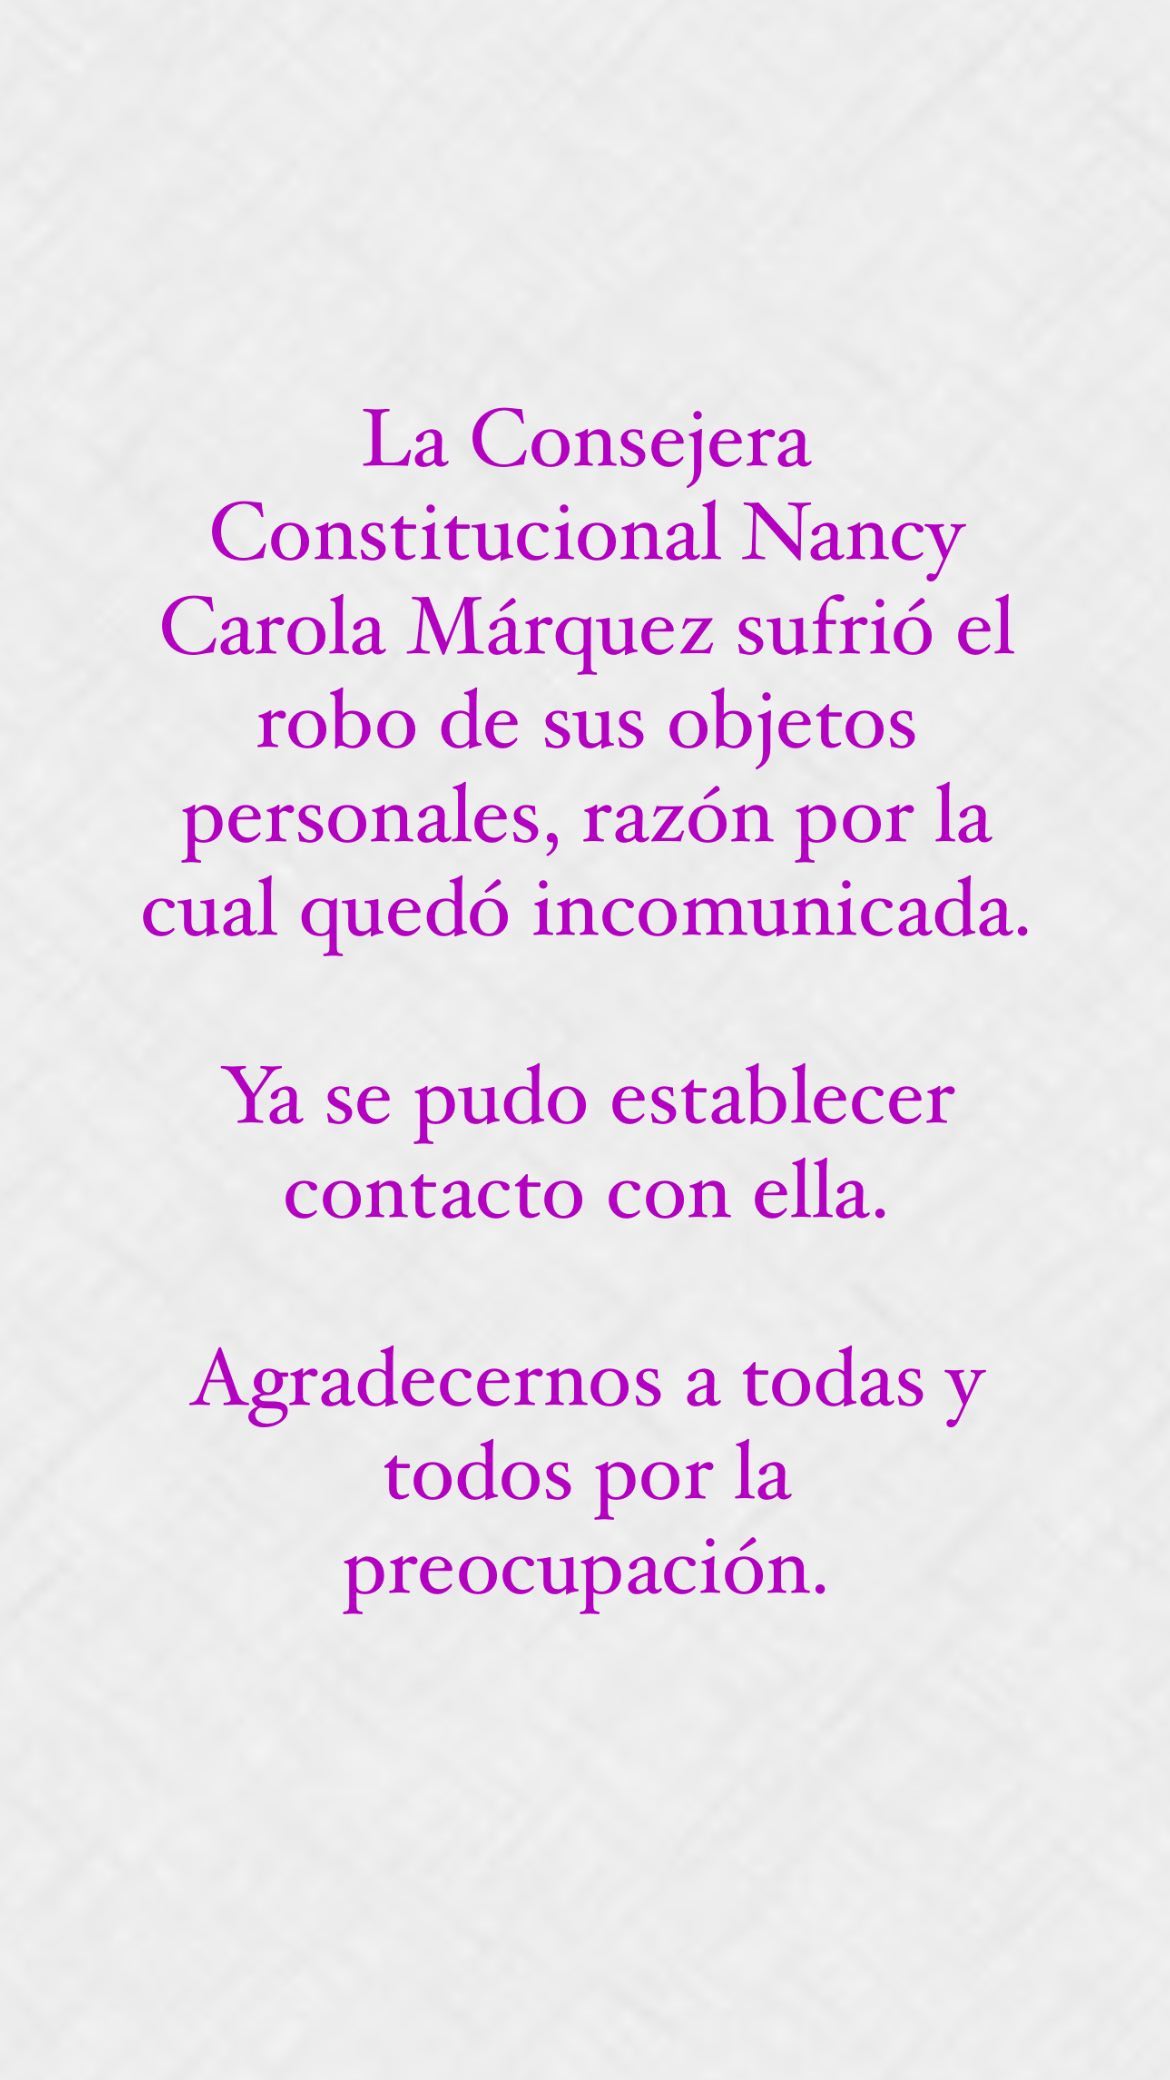 Historia de Nancy Márquez en Instagram.